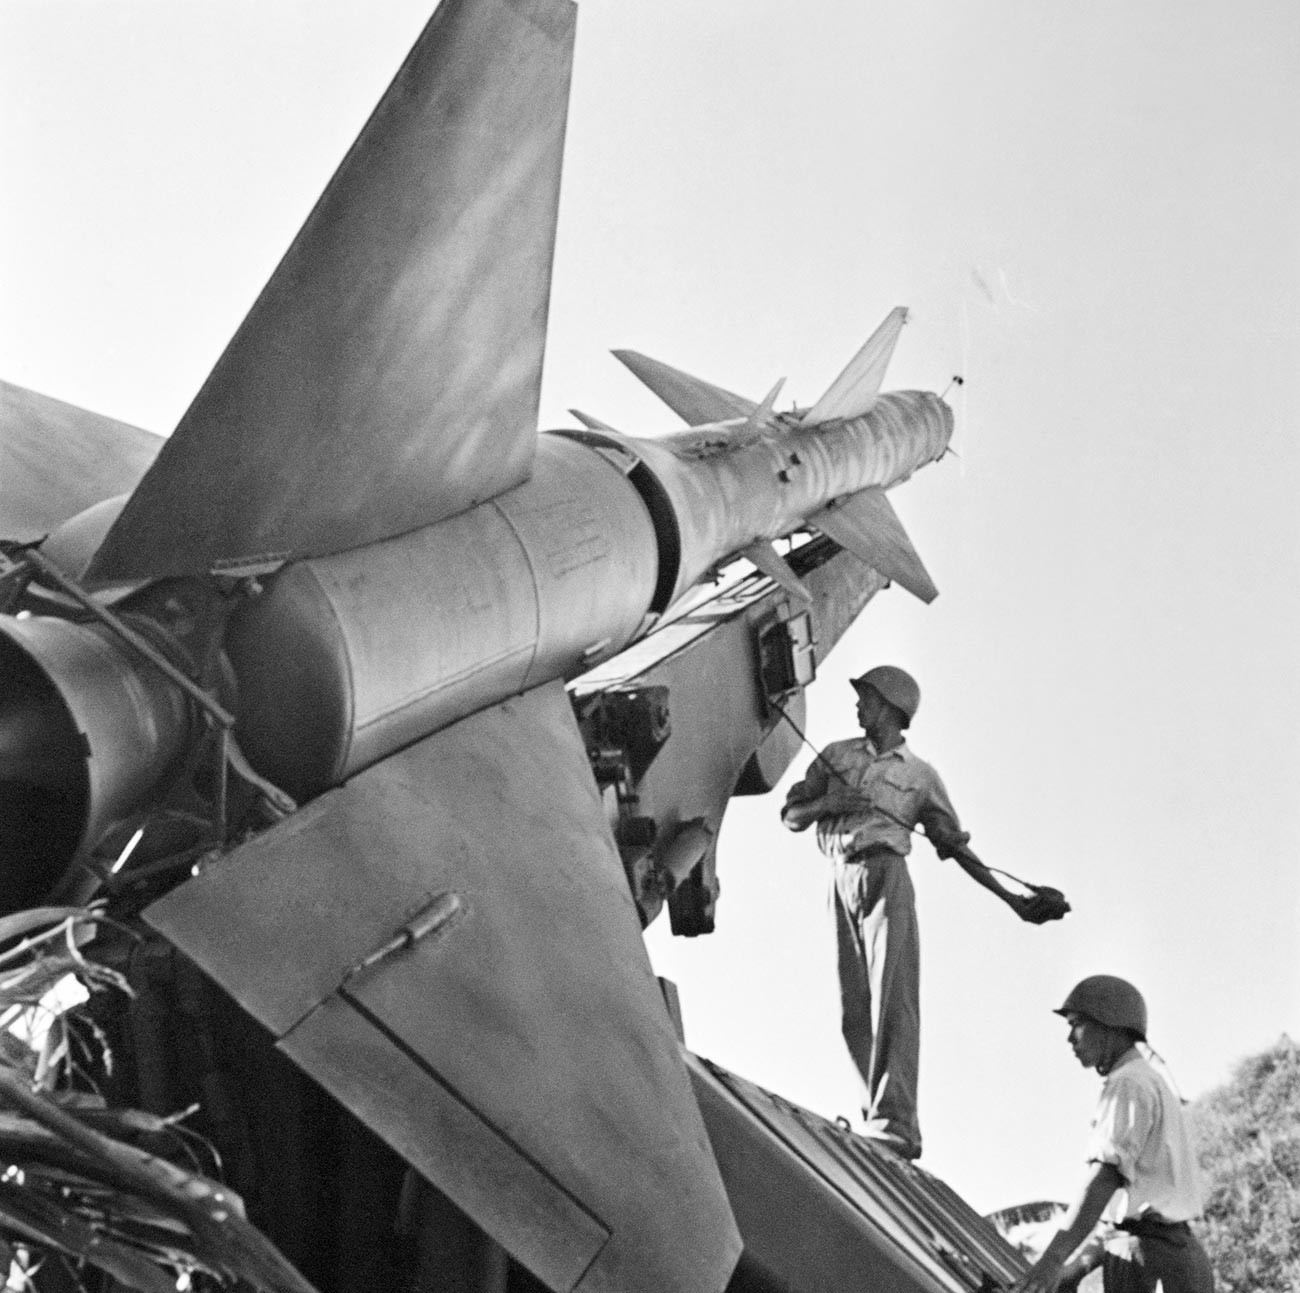 Бойцы Вьетнамской Народной Армии рядом с одной из боевых ракет для защиты от налетов авиации США во время войны во Вьетнаме